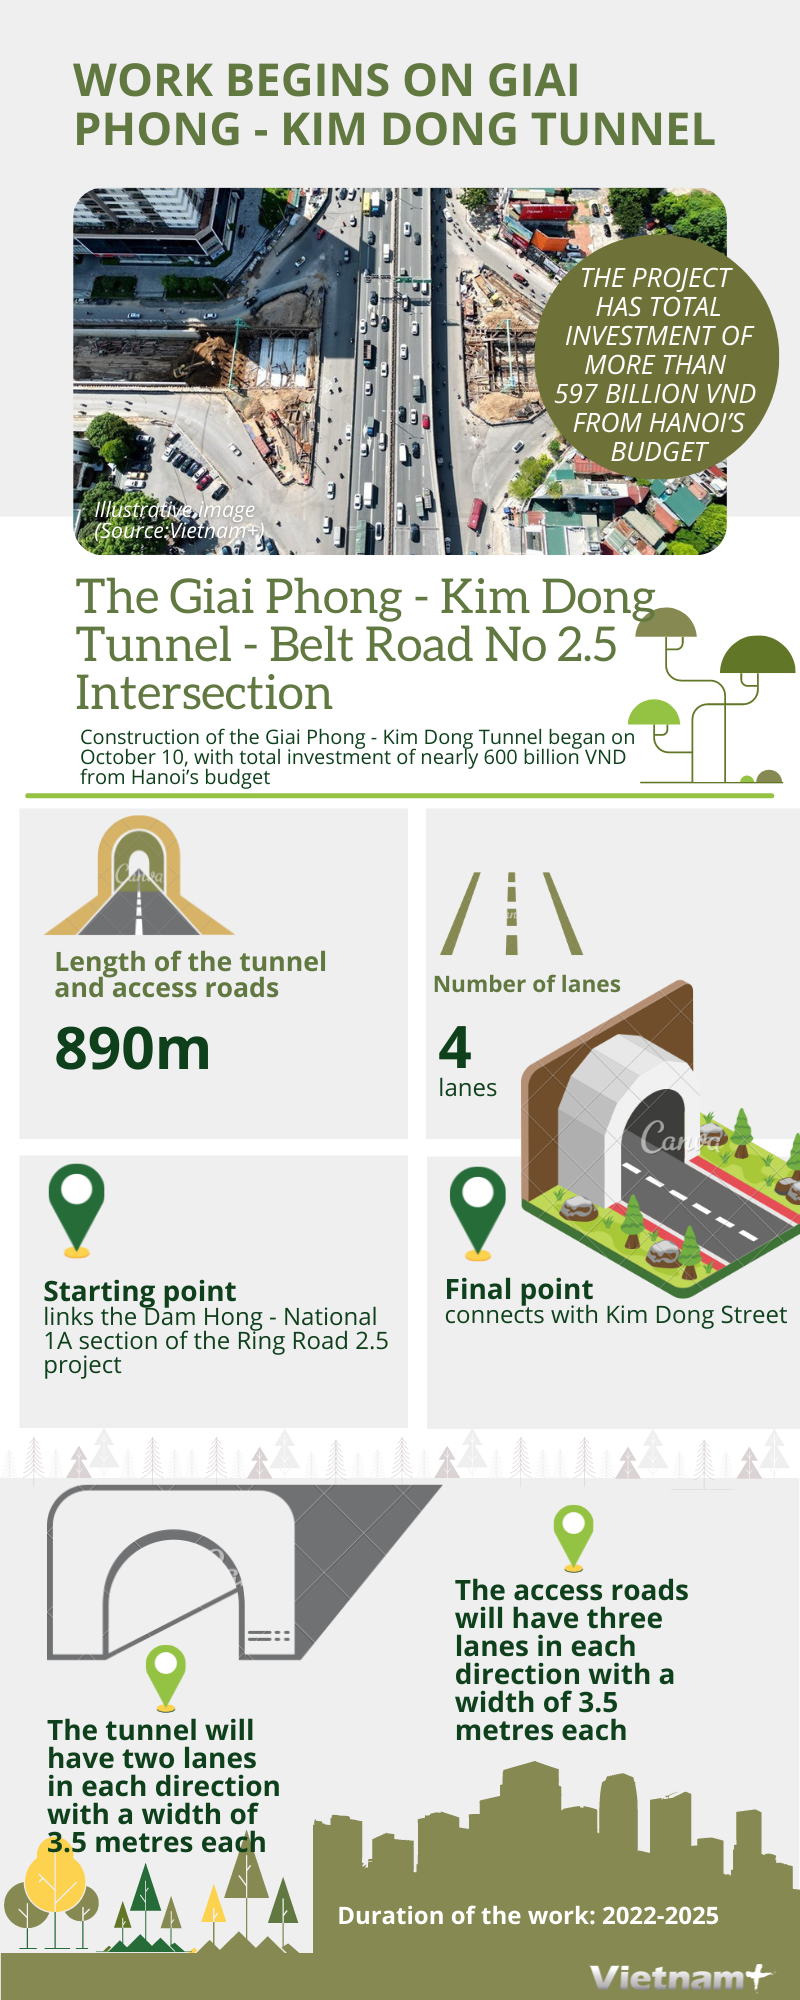 Work begins on Giai Phong - Kim Dong tunnel hinh anh 1